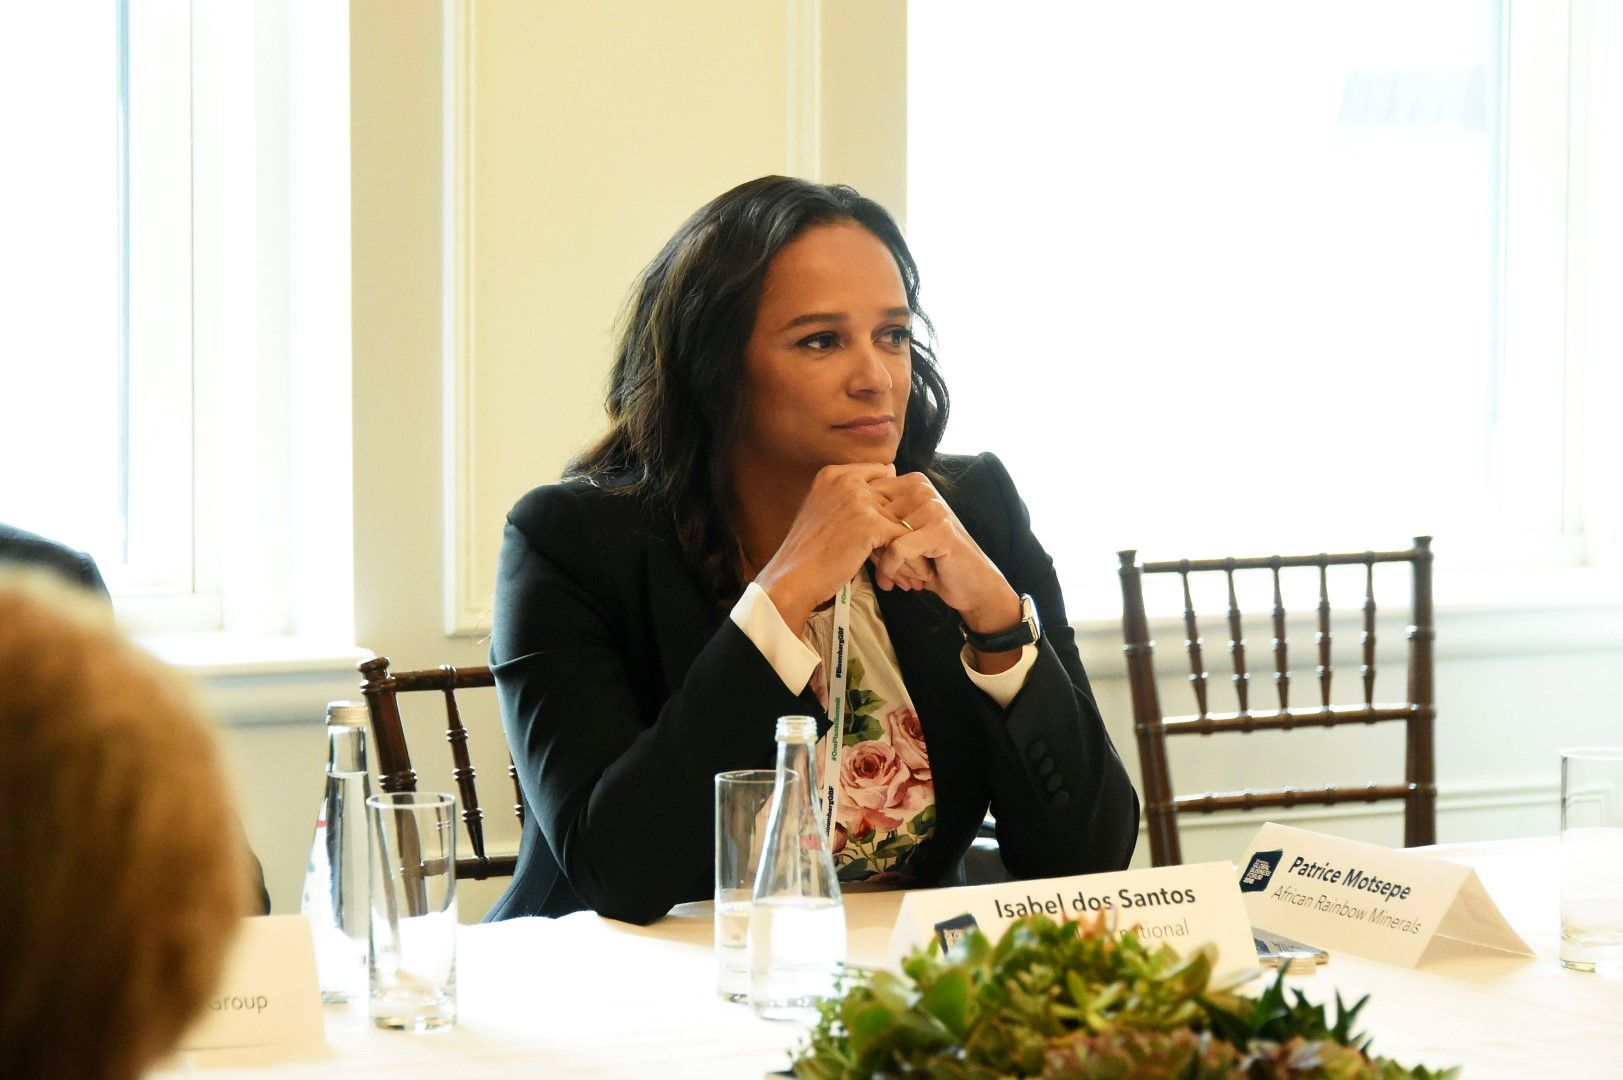 Изабел душ Сантуш участва в кръгла маса на тема „Еволюцията на бизнеса в енергетиката“ на Глобалния бизнес форум на Блумбърг в хотел „Плаза“ на 26 септември 2018 г. в Ню Йорк